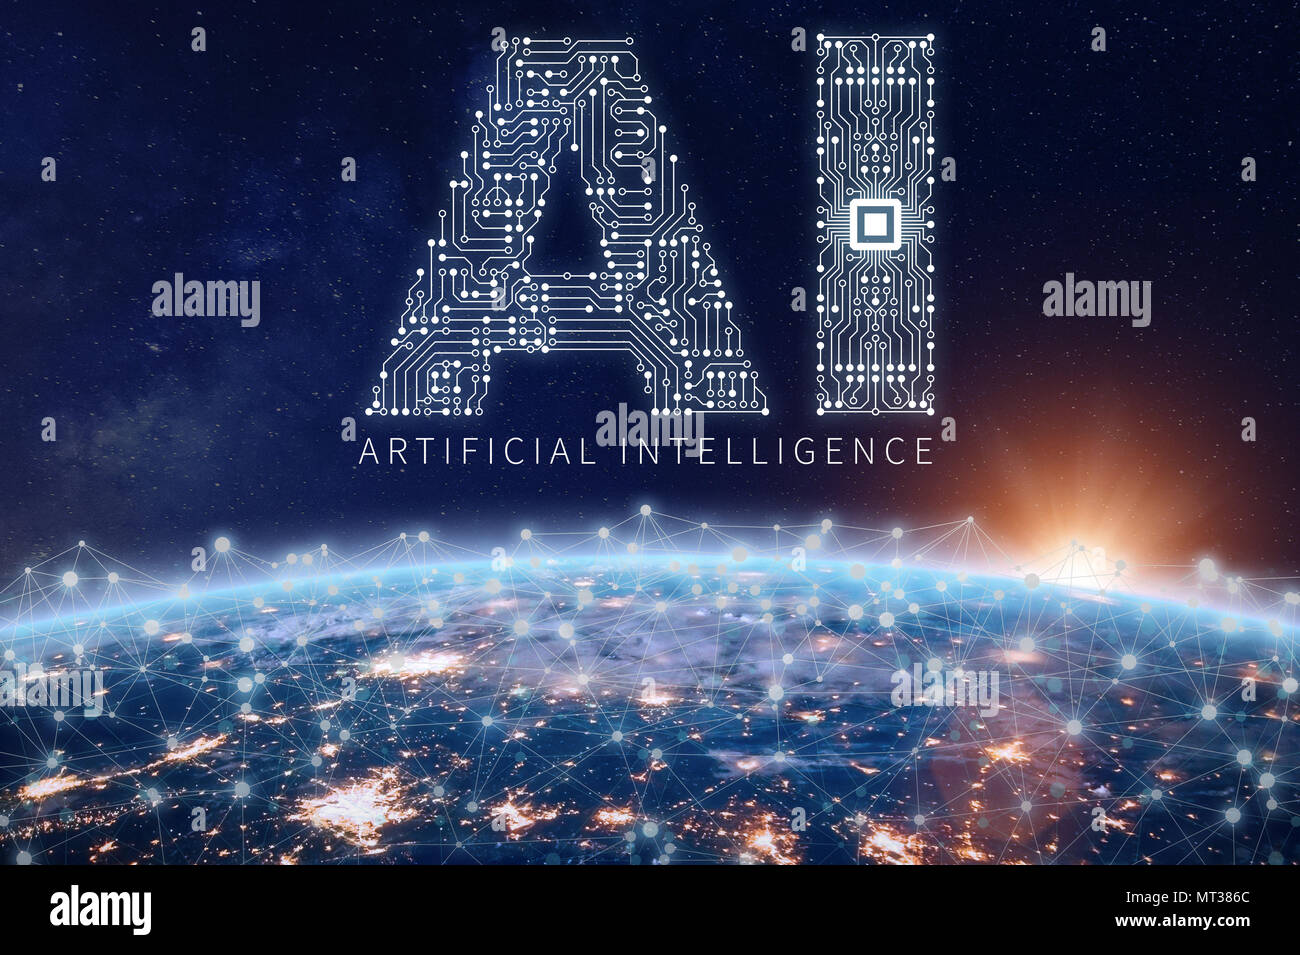 La technologie d'Intelligence Artificielle concept avec Ia texte faite de platine électronique avec puce électronique au-dessus de la planète Terre avec réseau connecté, dat Banque D'Images